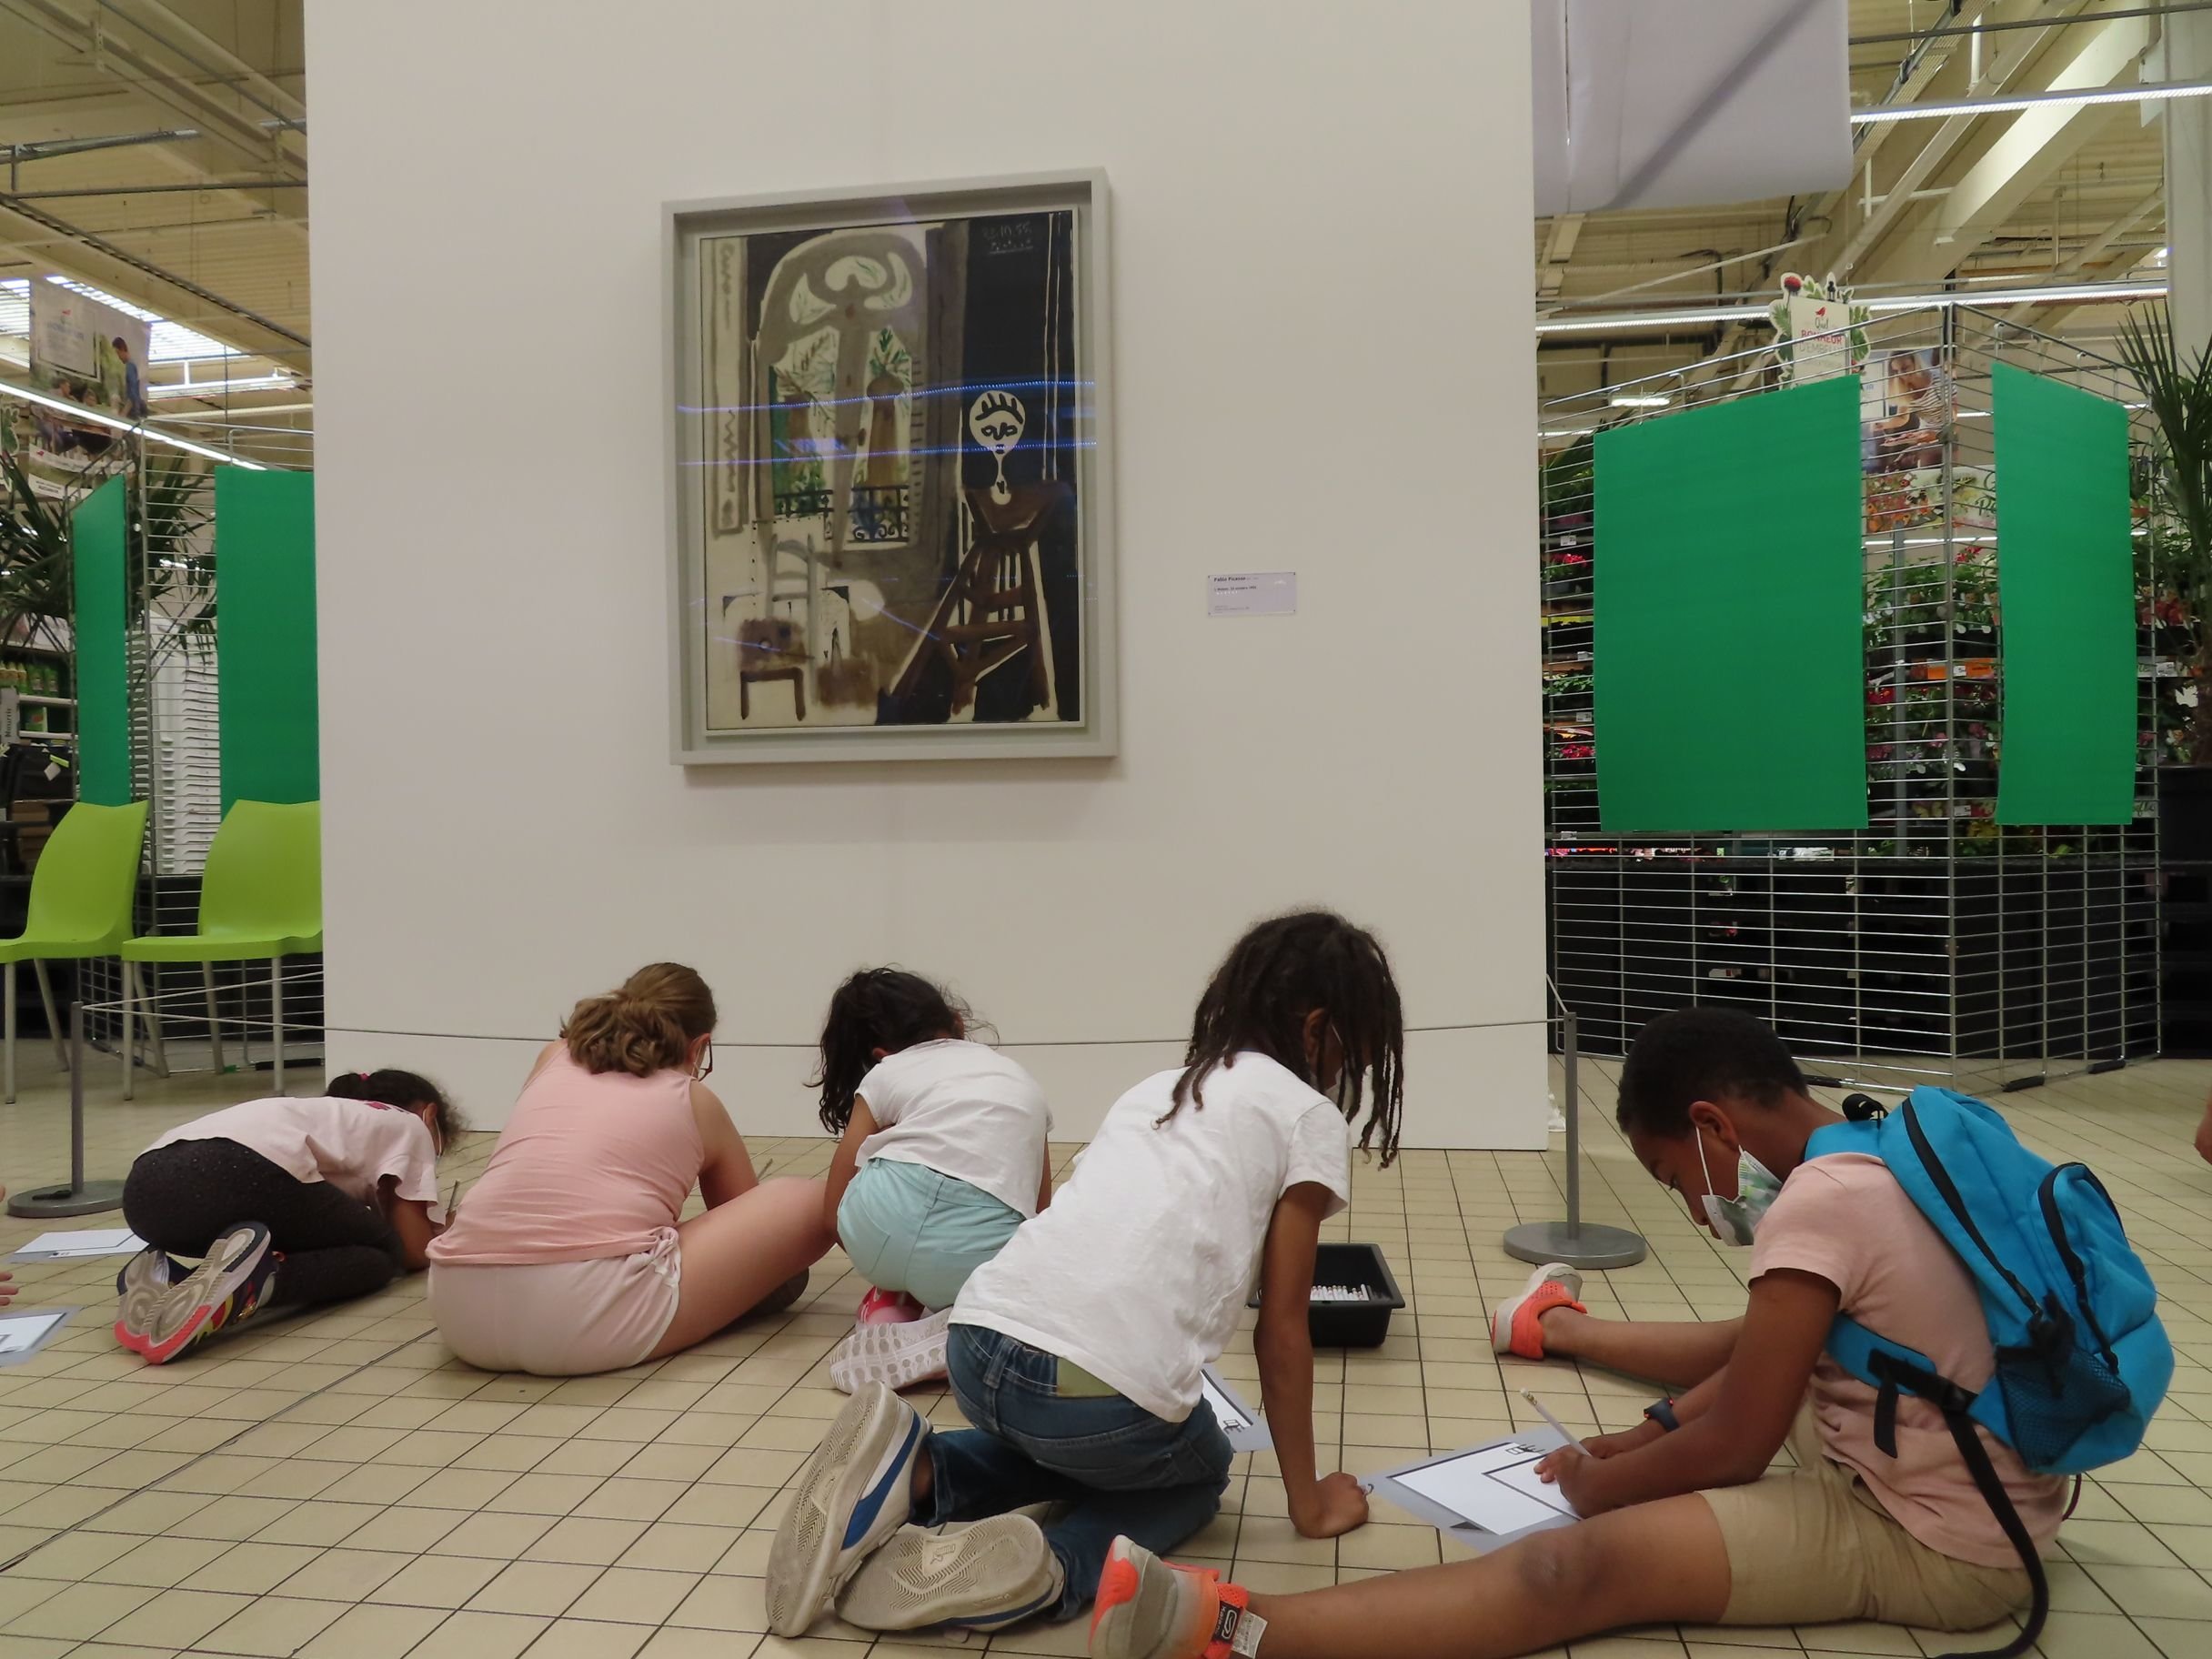 Vigneux-sur-Seine, le 9 juin 2021. Le Centre Pompidou a exposé au milieu du magasin Auchan du centre commercial du Valdoly dans le cadre de l'opération "Un jour une oeuvre".